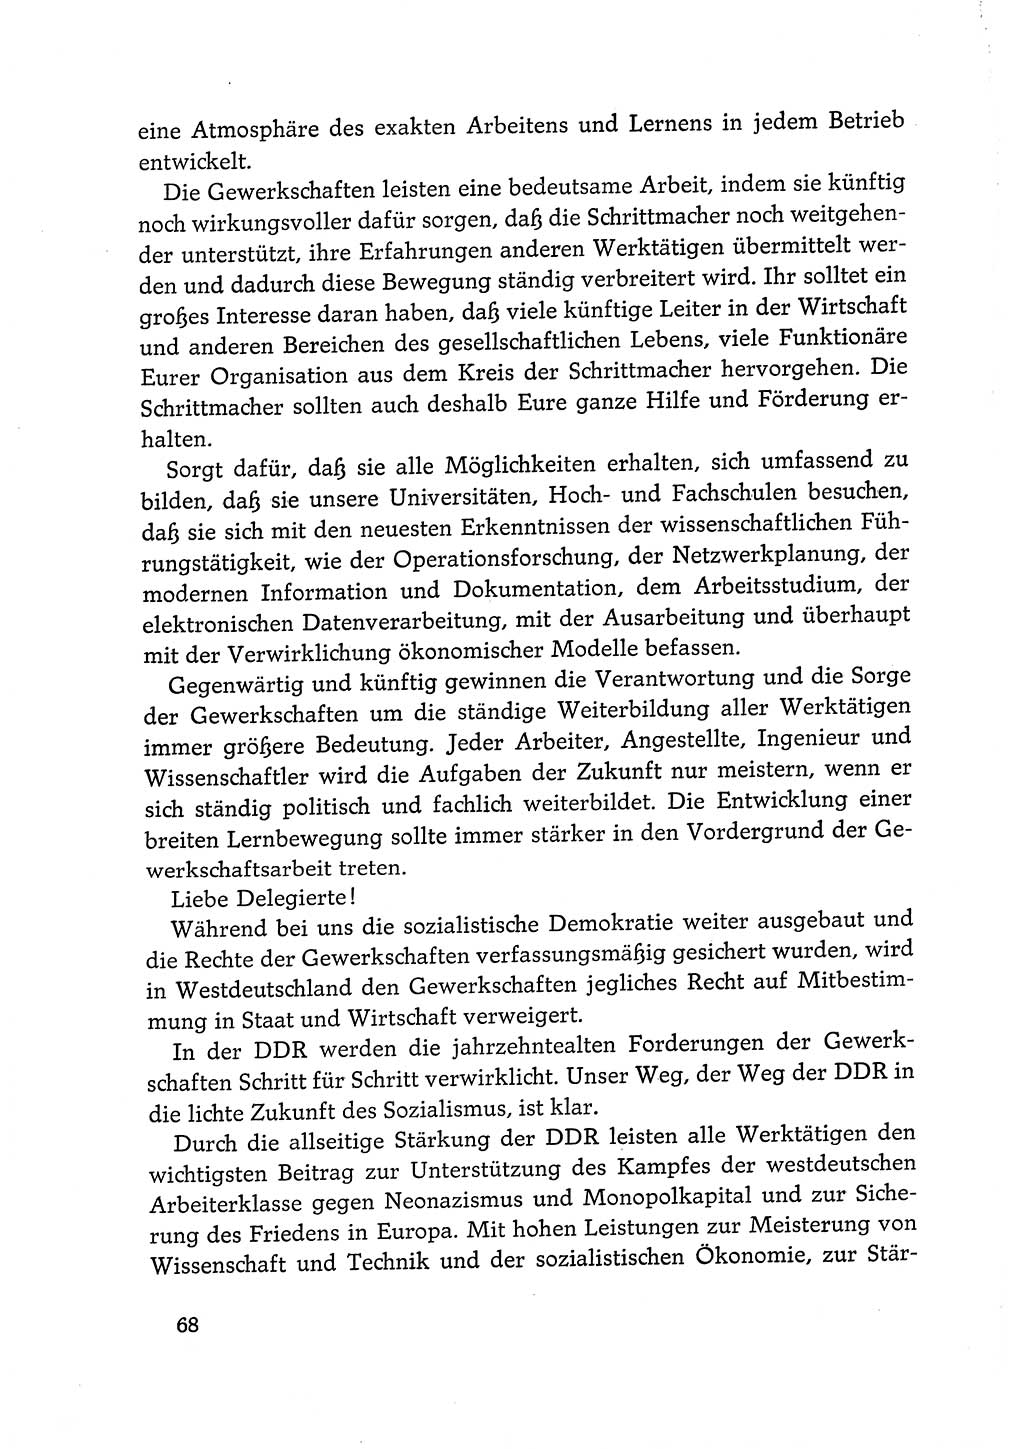 Dokumente der Sozialistischen Einheitspartei Deutschlands (SED) [Deutsche Demokratische Republik (DDR)] 1968-1969, Seite 68 (Dok. SED DDR 1968-1969, S. 68)